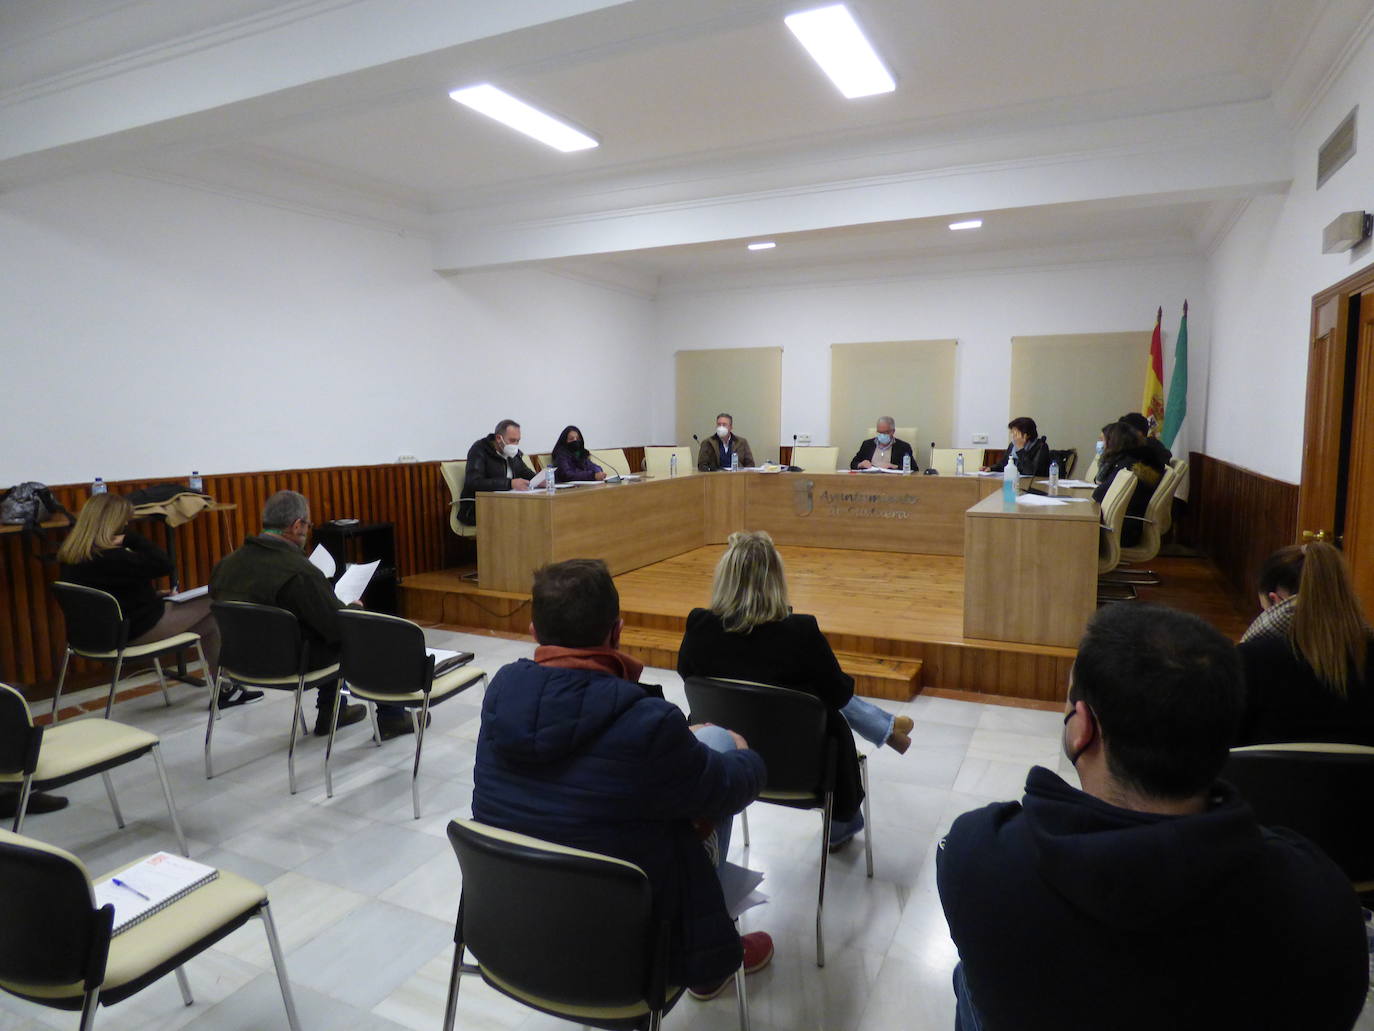 El Ayuntamiento de Castuera celebra el hoy lunes 7 de febrero un pleno extraordinario y urgente